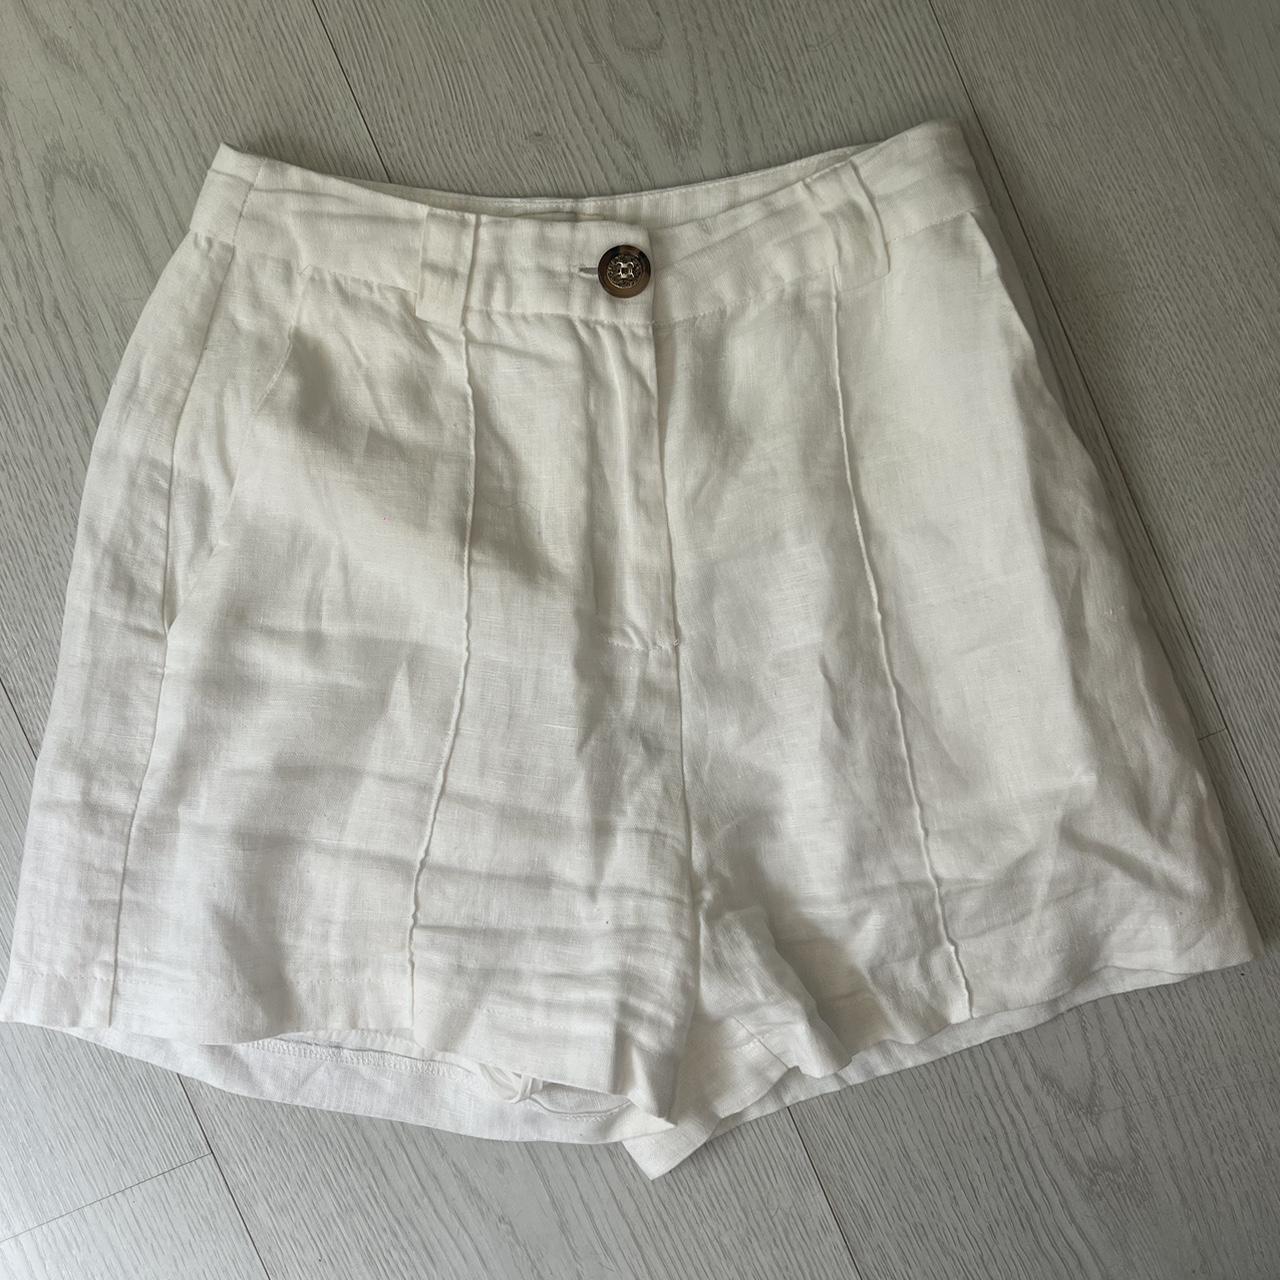 Linen dissh shorts #dissh - Depop